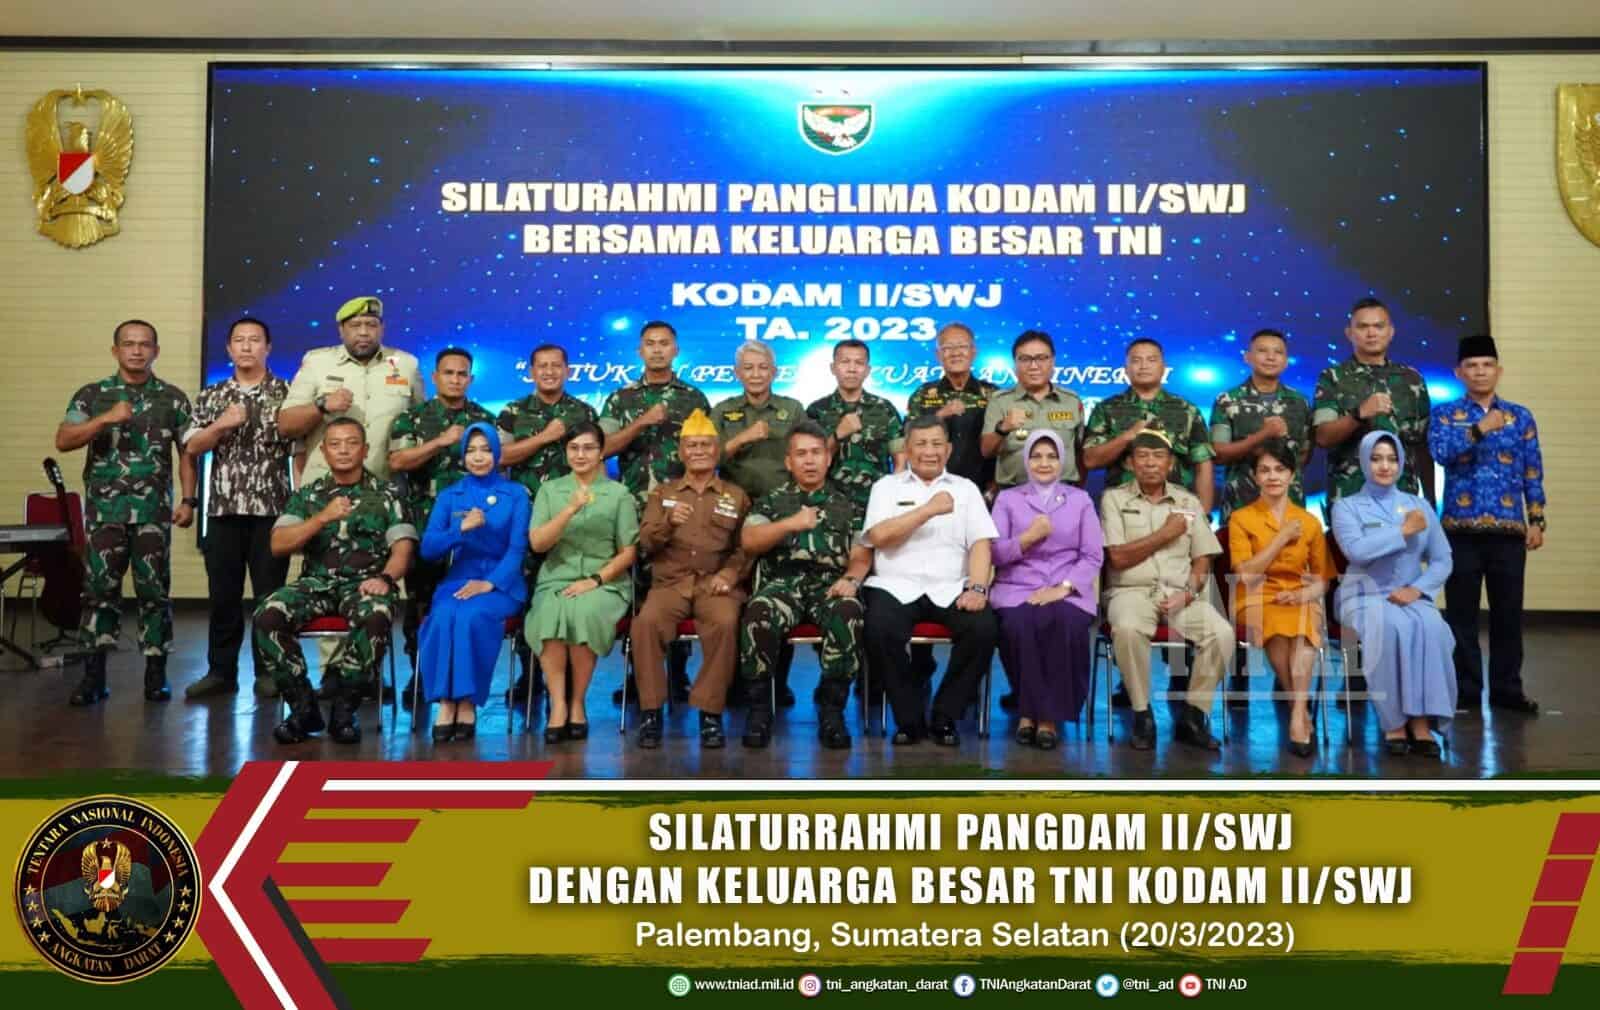 Silaturrahmi Pangdam II/Swj Dengan Keluarga Besar TNI Kodam II/Swj